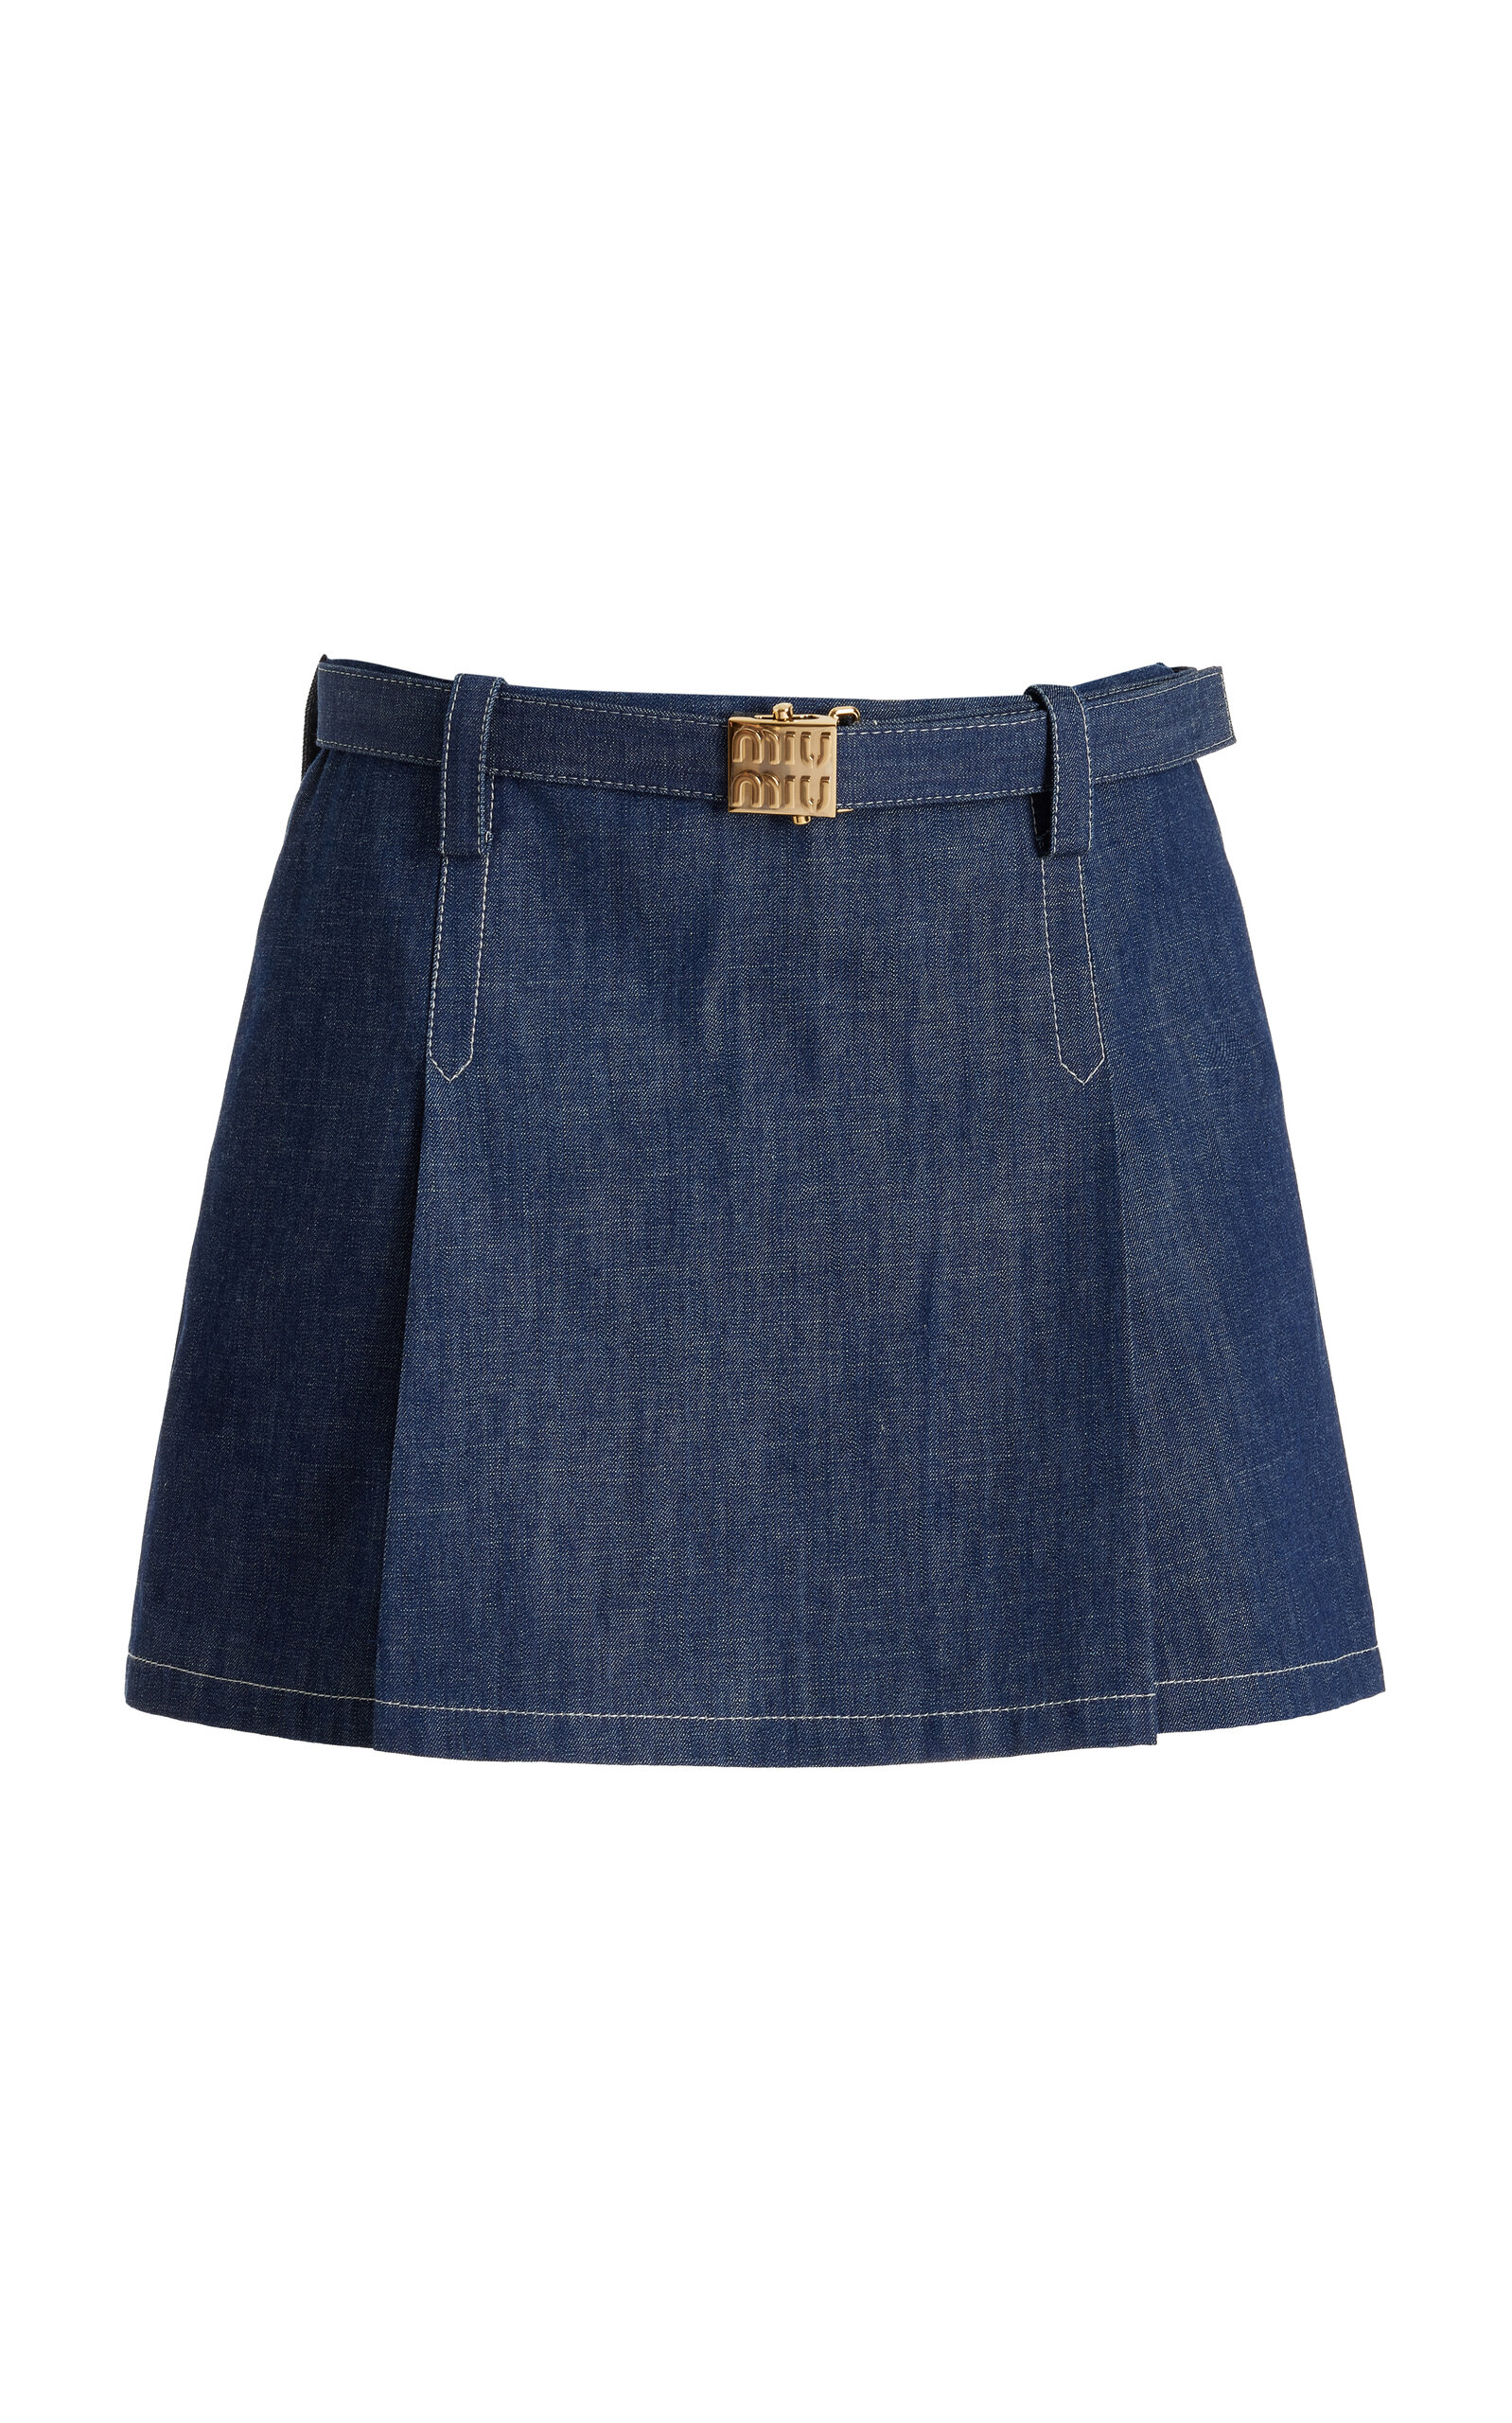 Miu Miu - Raw-Denim Mini Skirt - Medium Wash - IT 40 - Moda Operandi